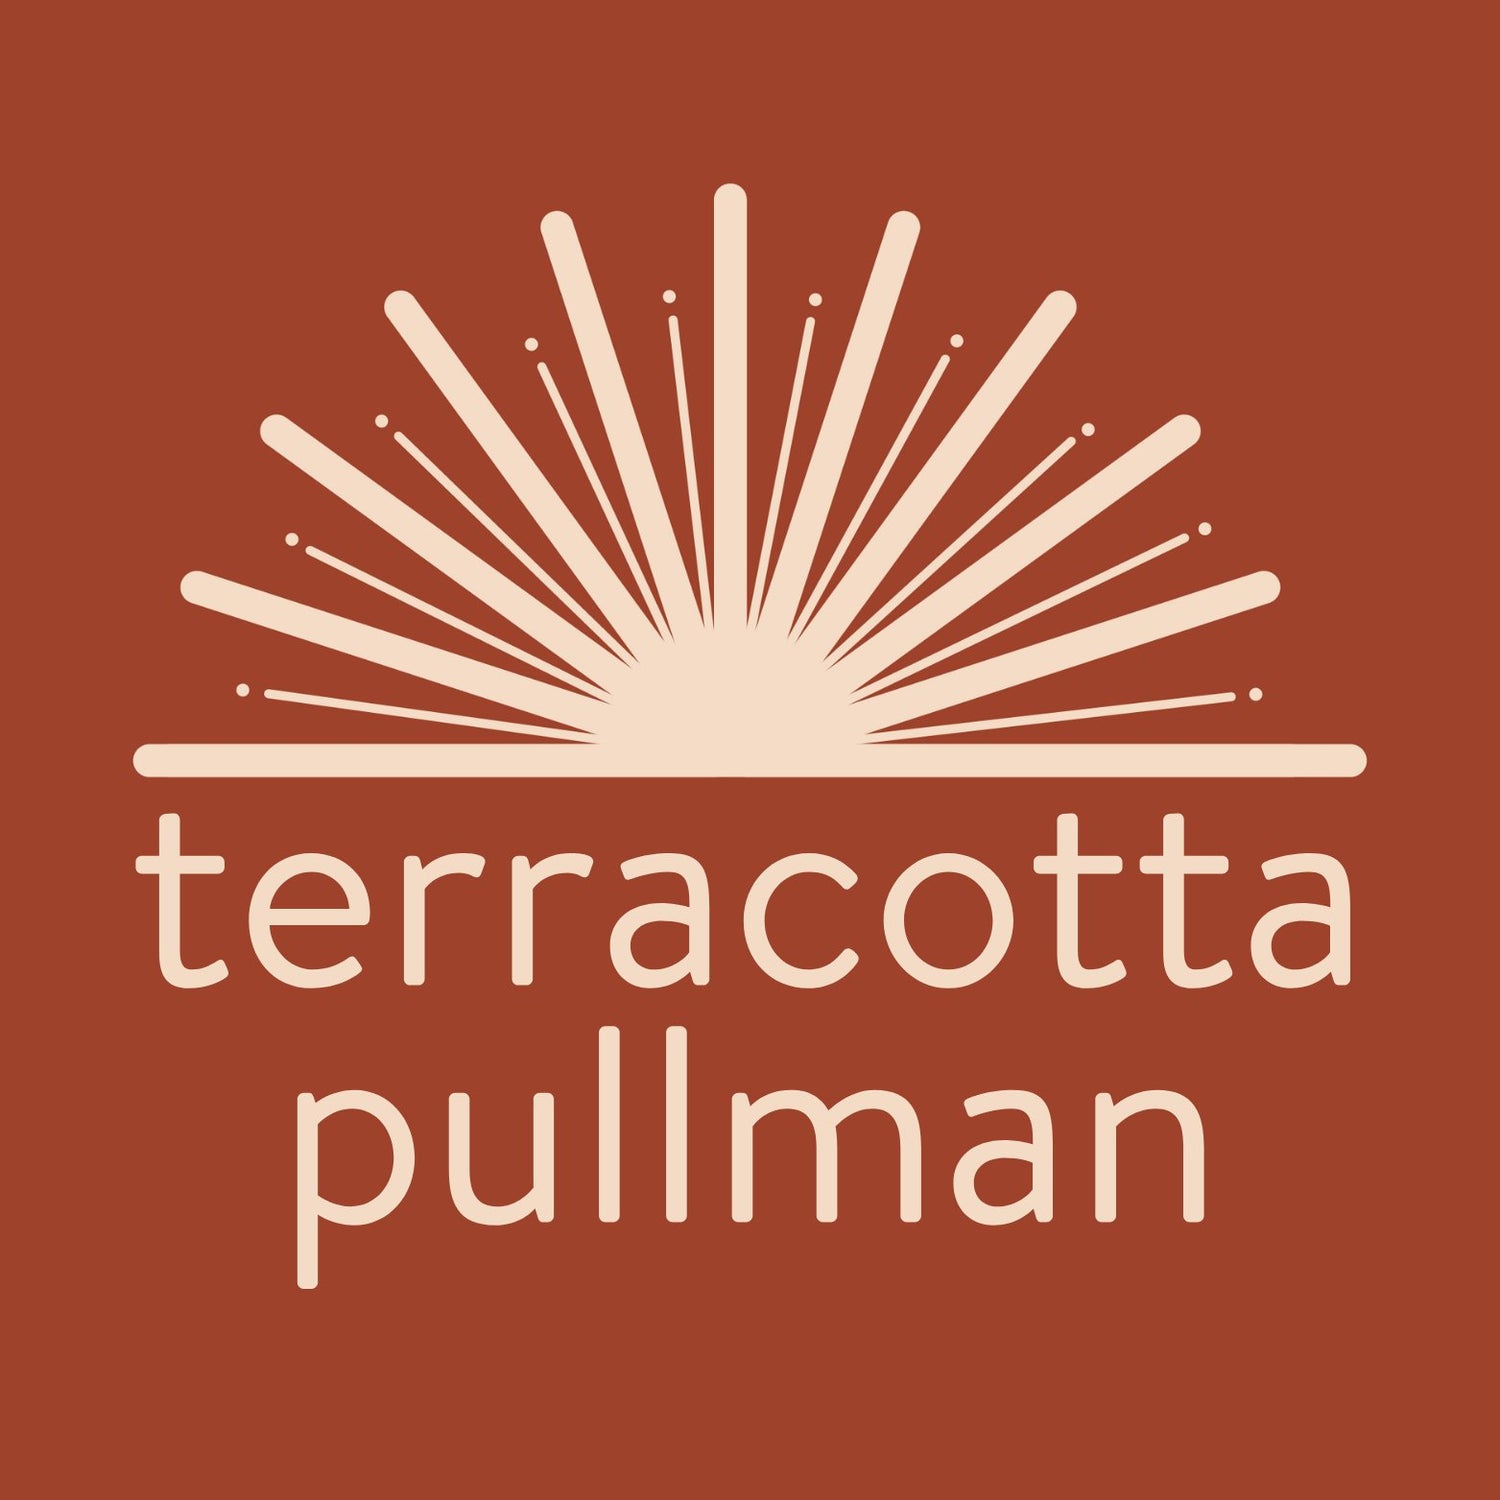 Terracotta Pullman